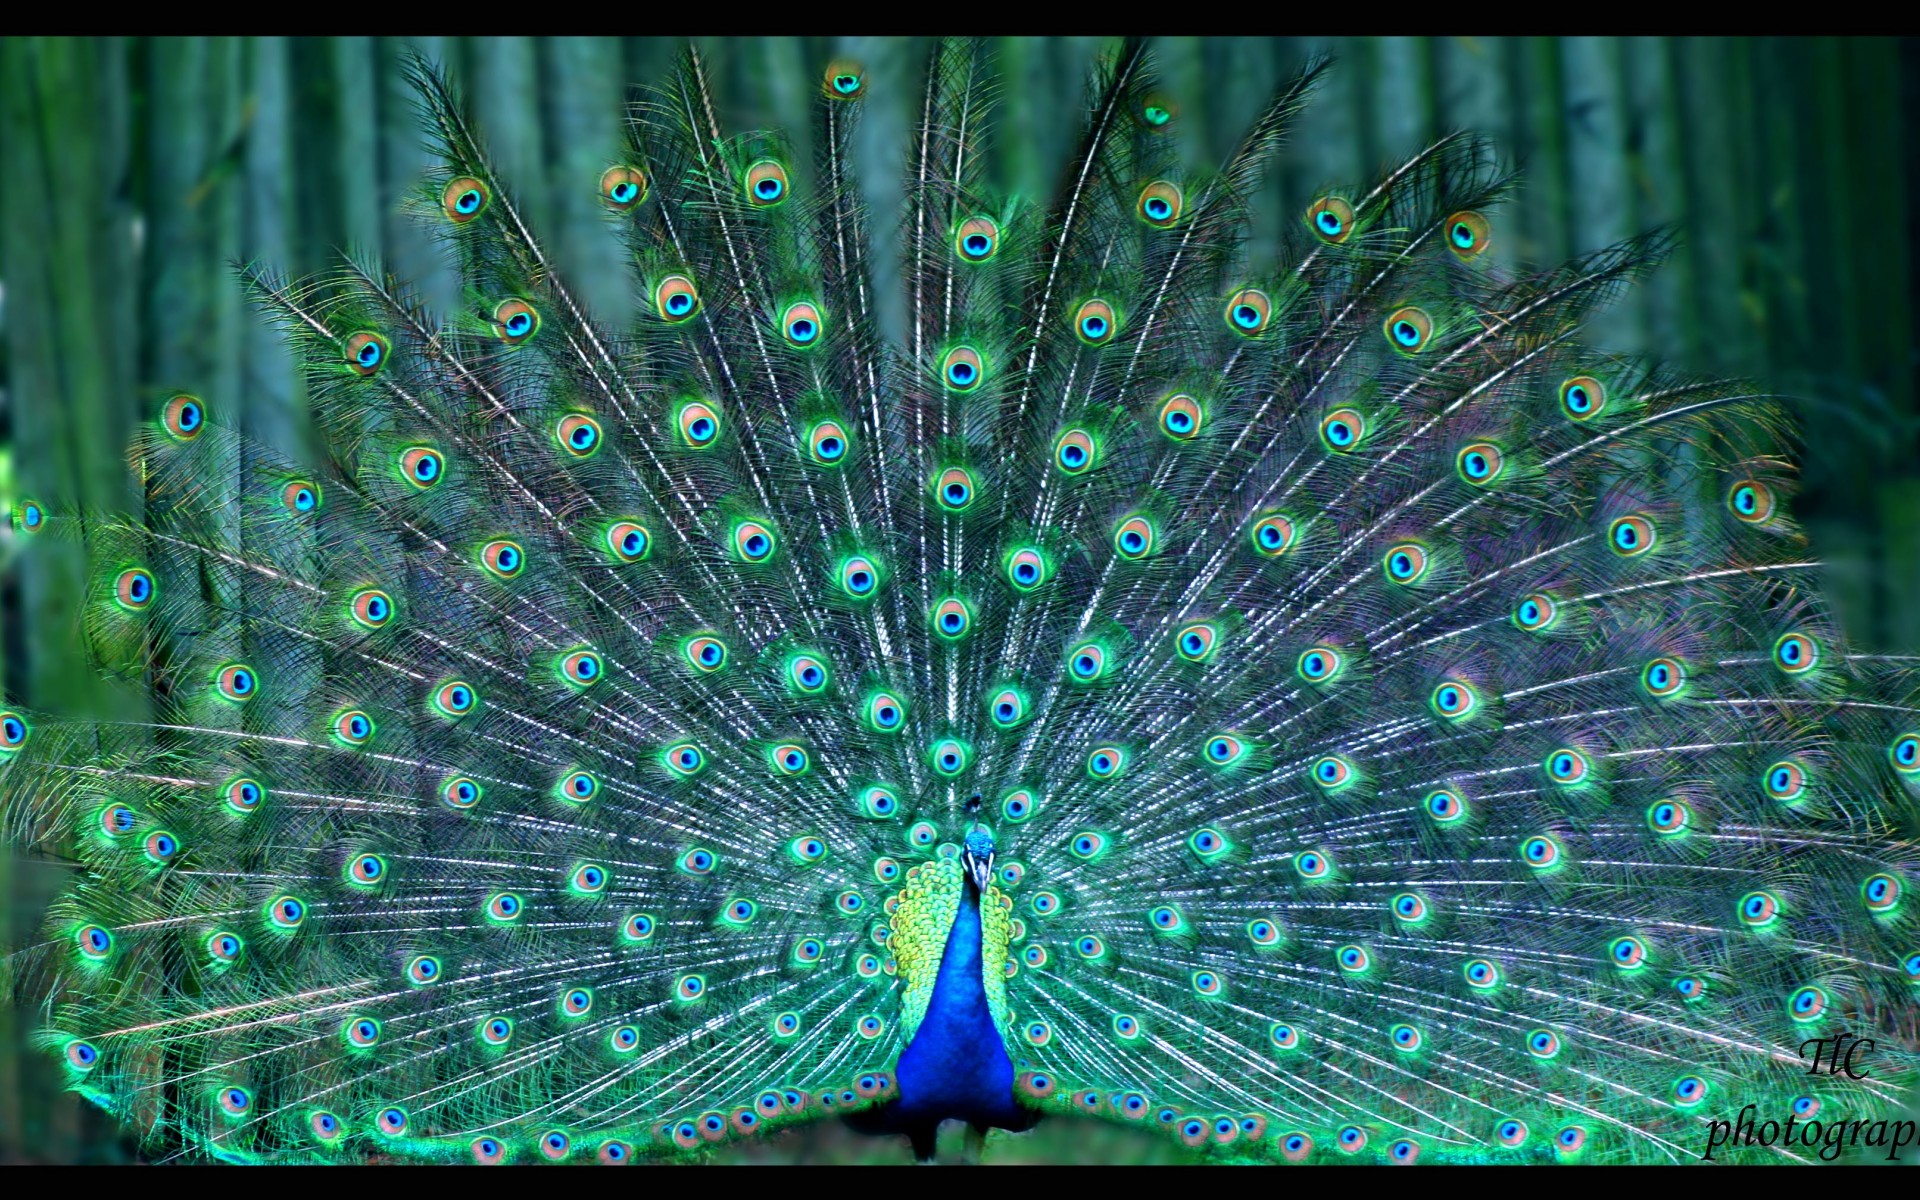 Peacock Puter Wallpaper Desktop Background